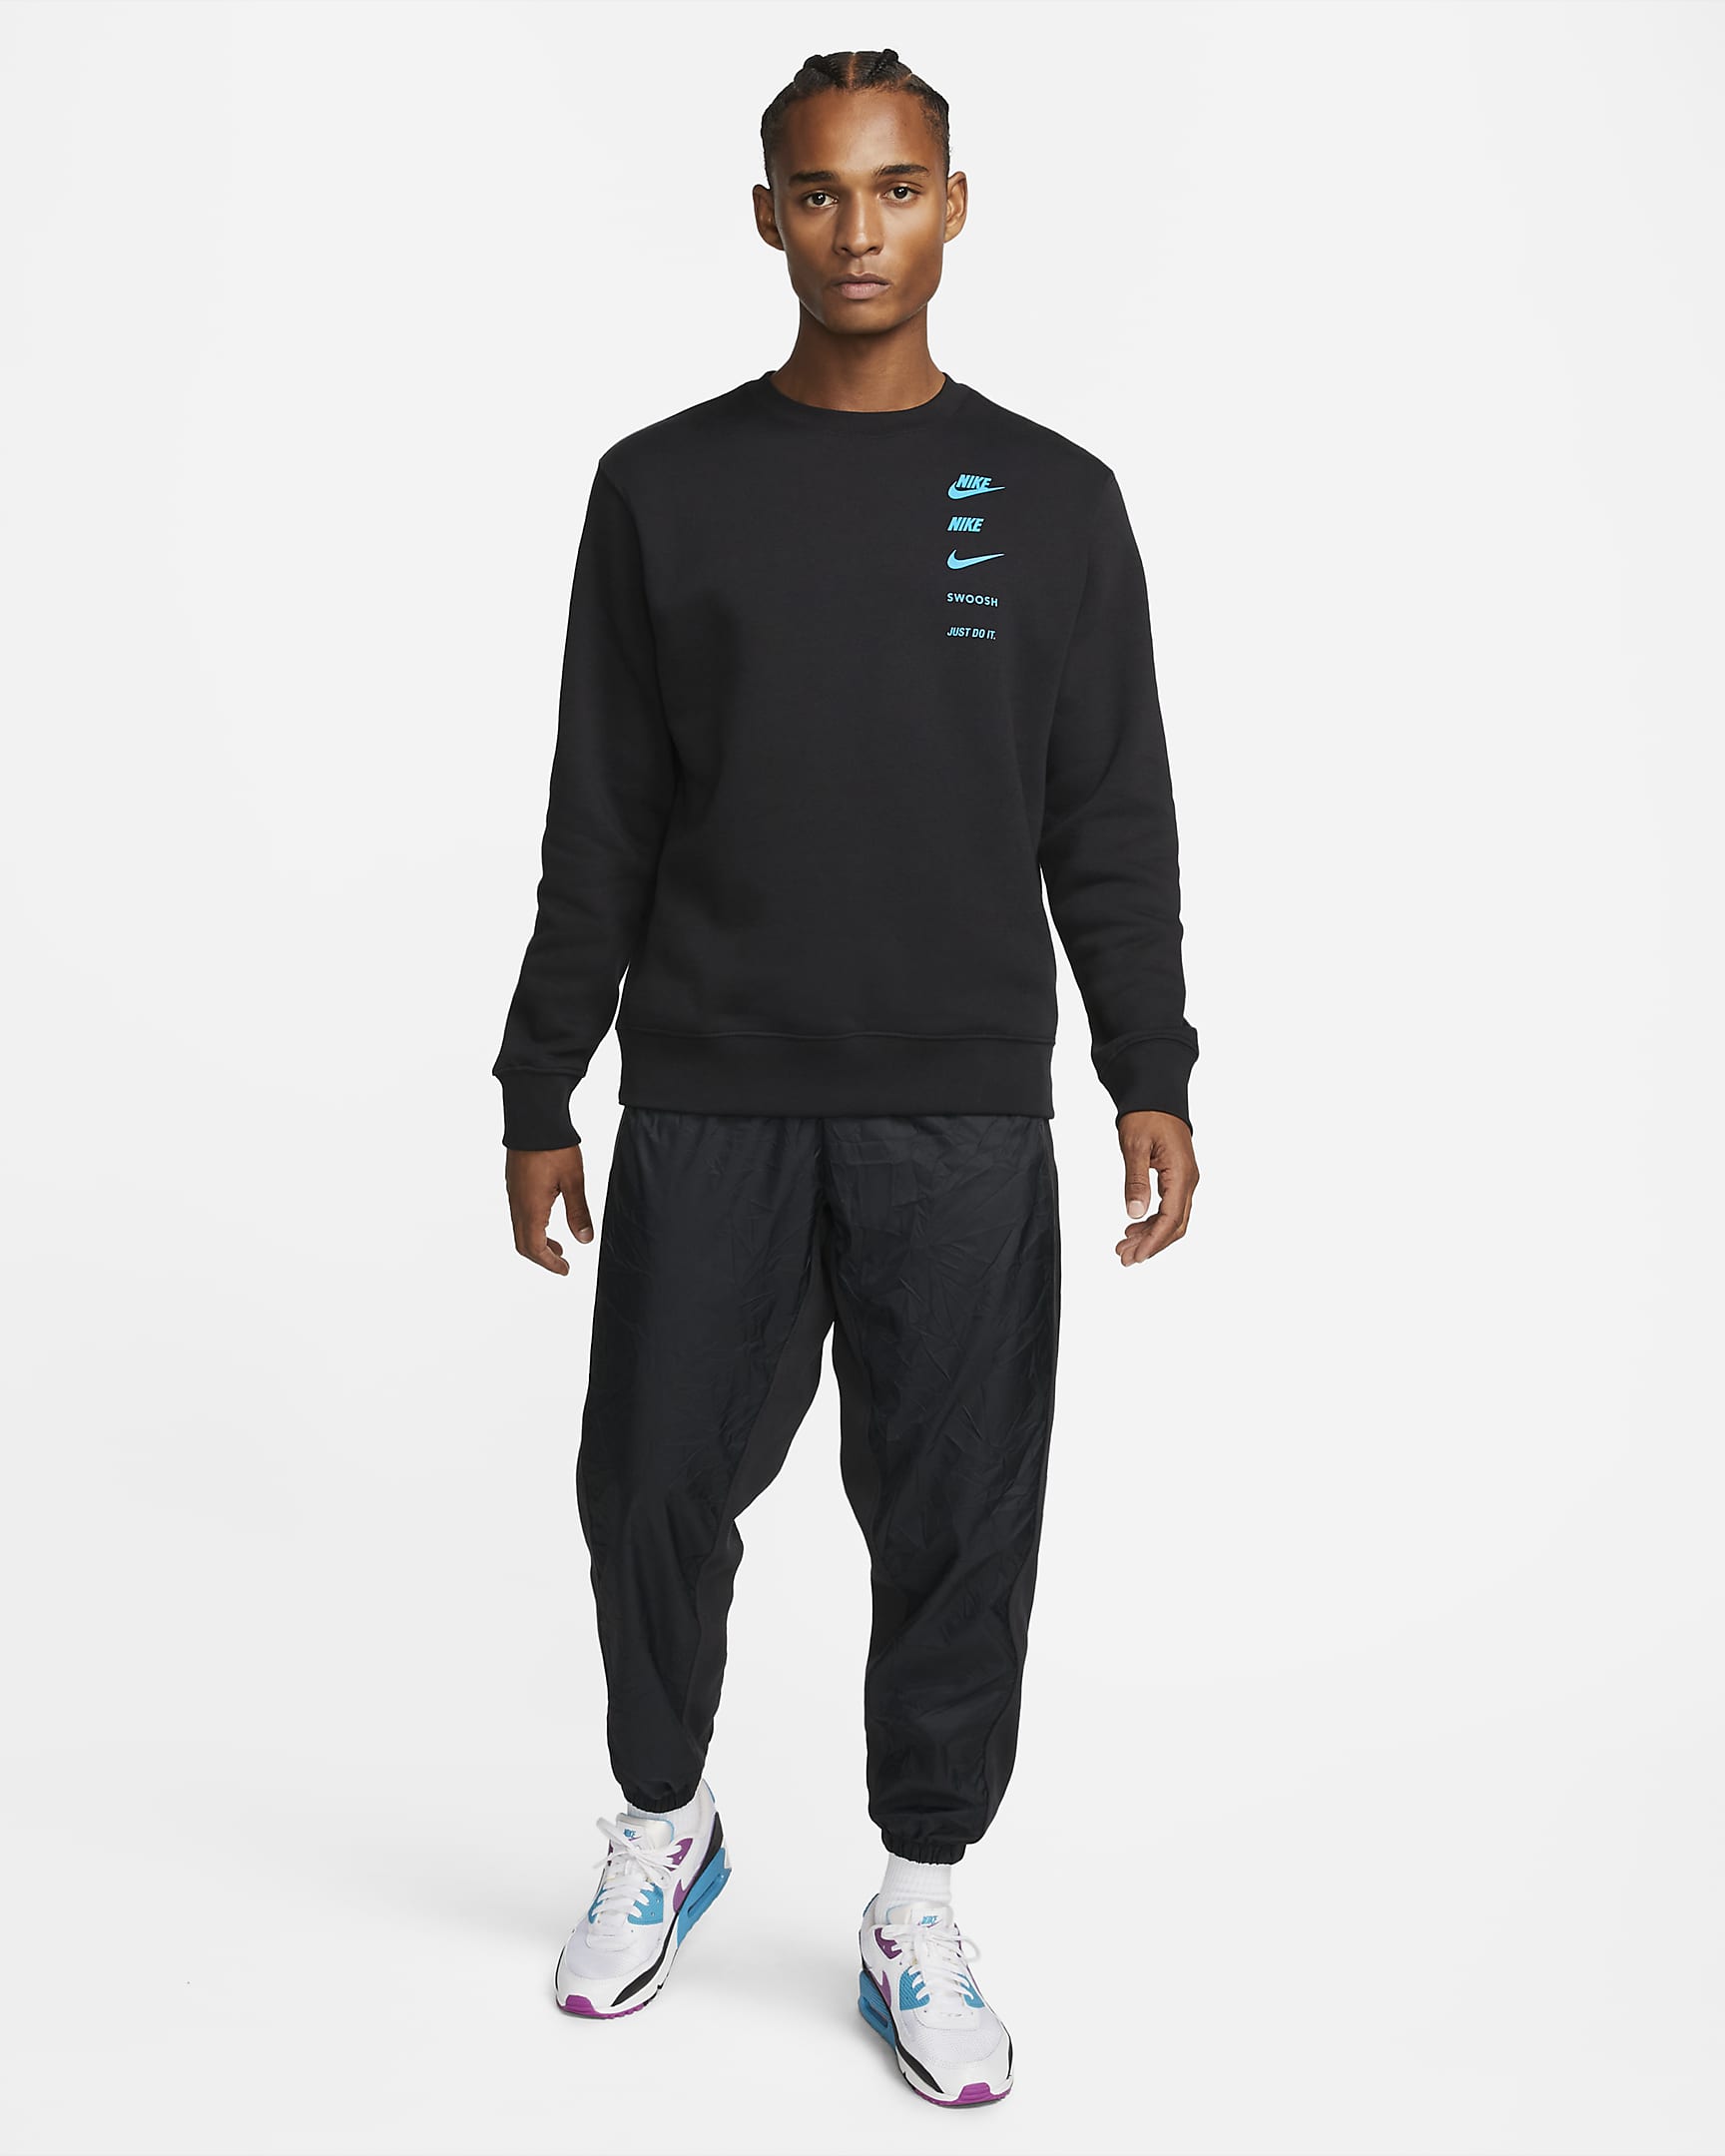 Nike Sportswear Standard Issue Men's Crew-Neck Sweatshirt. Nike CA